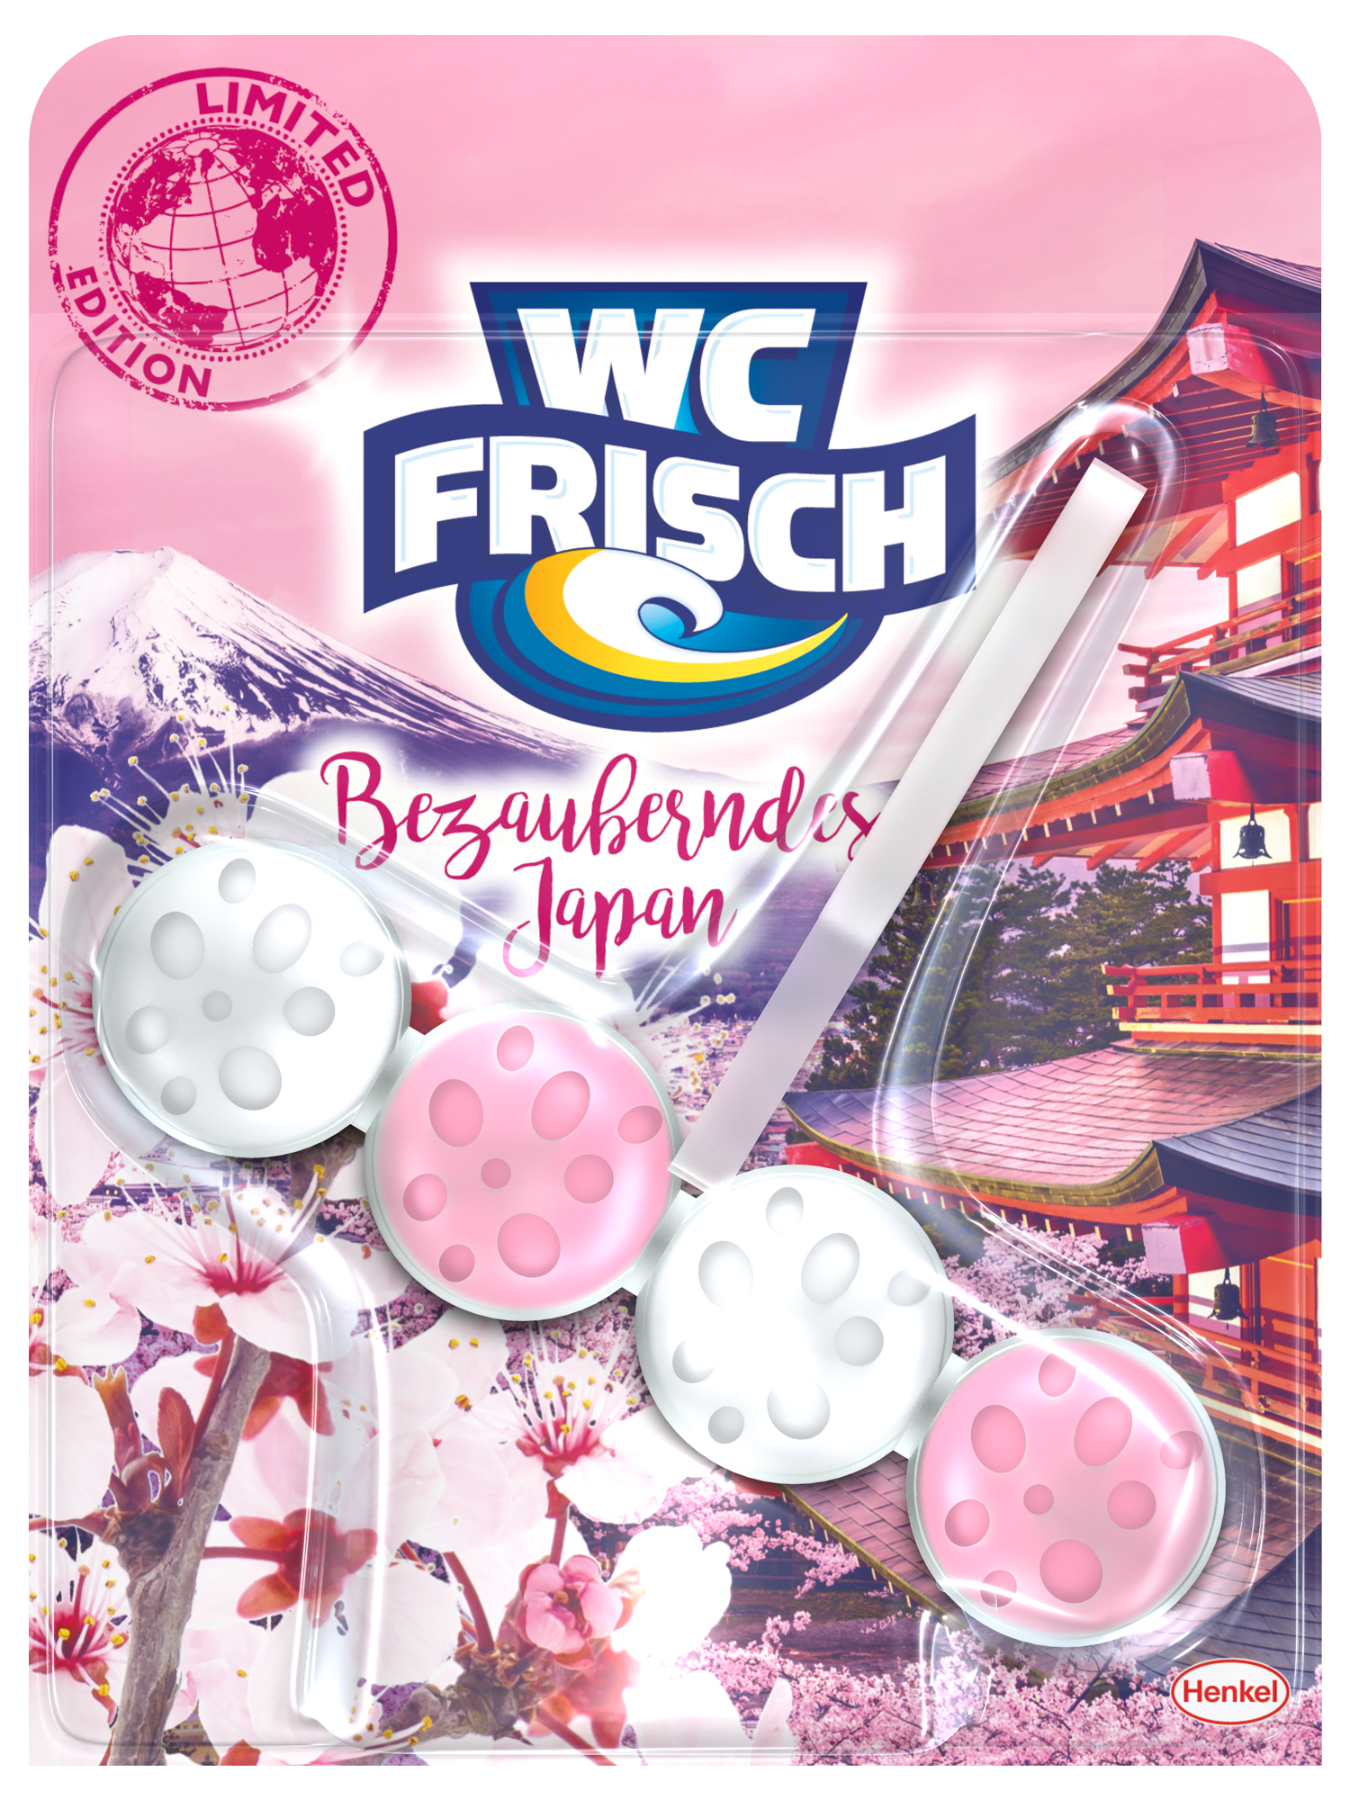 Die neue WC Frisch Limited Edition mit der Version Bezauberndes Japan